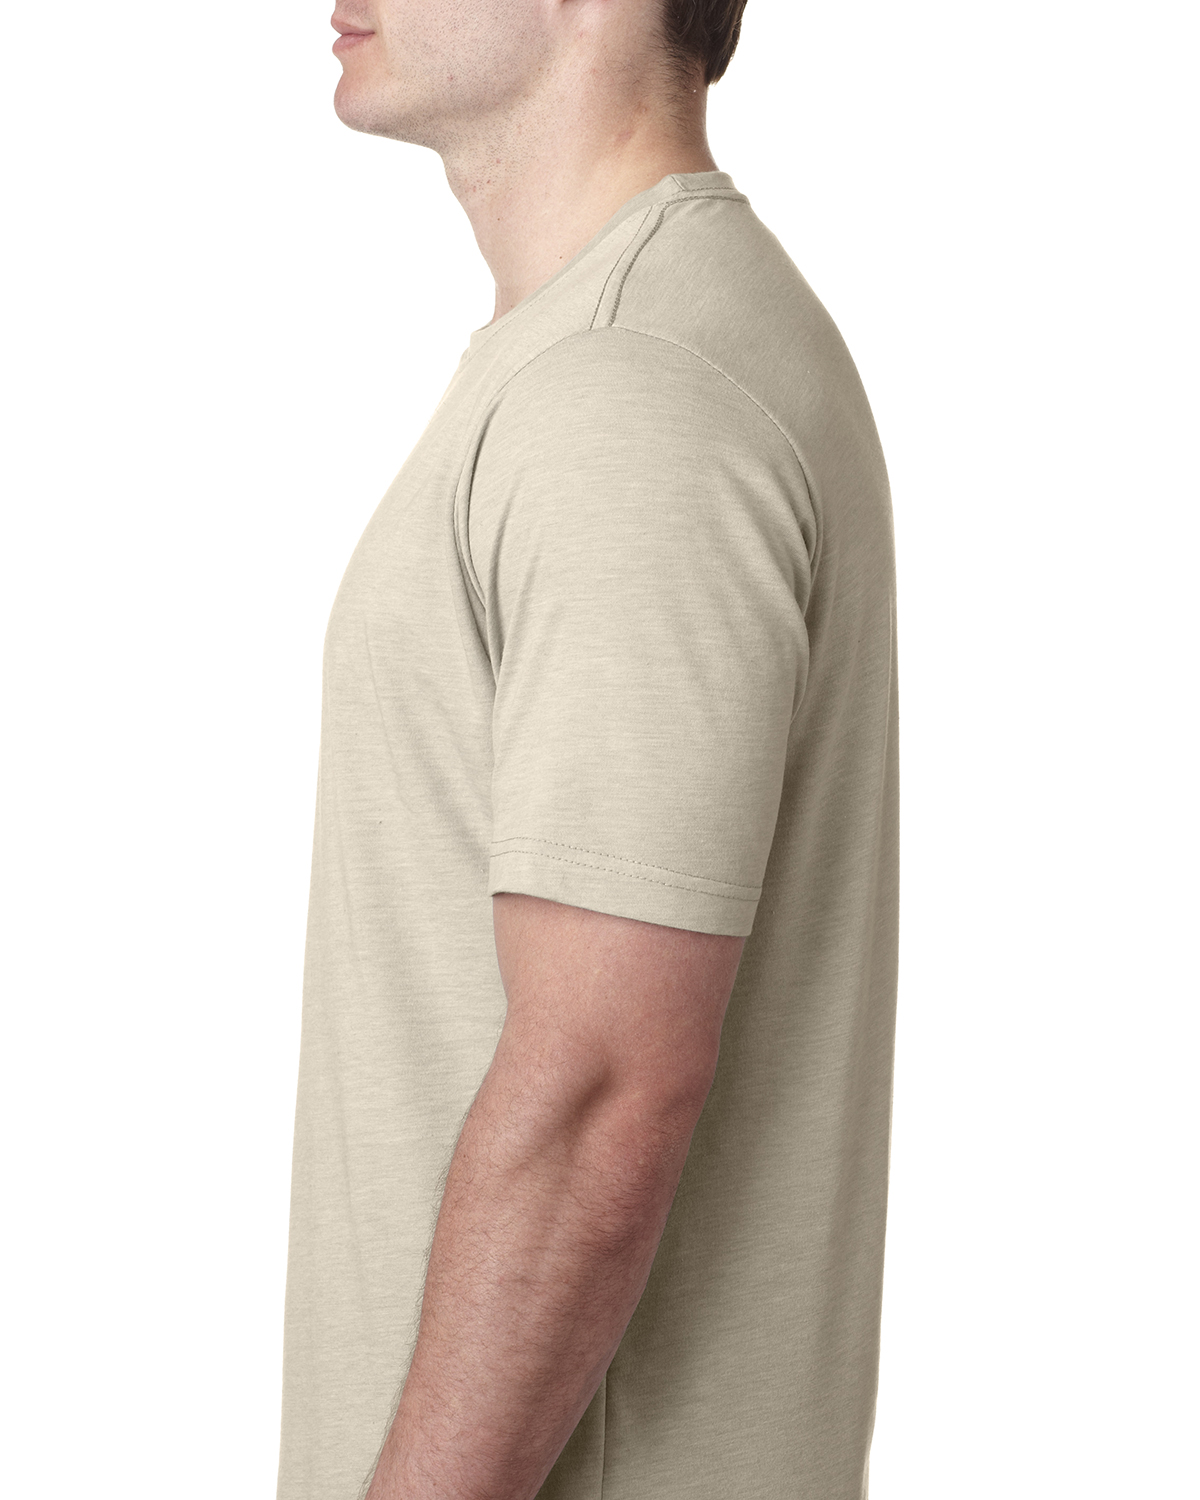 Next Level Men's PLAIN Poly/Cotton Short Sleeve Crew Neck T-Shirt M ...